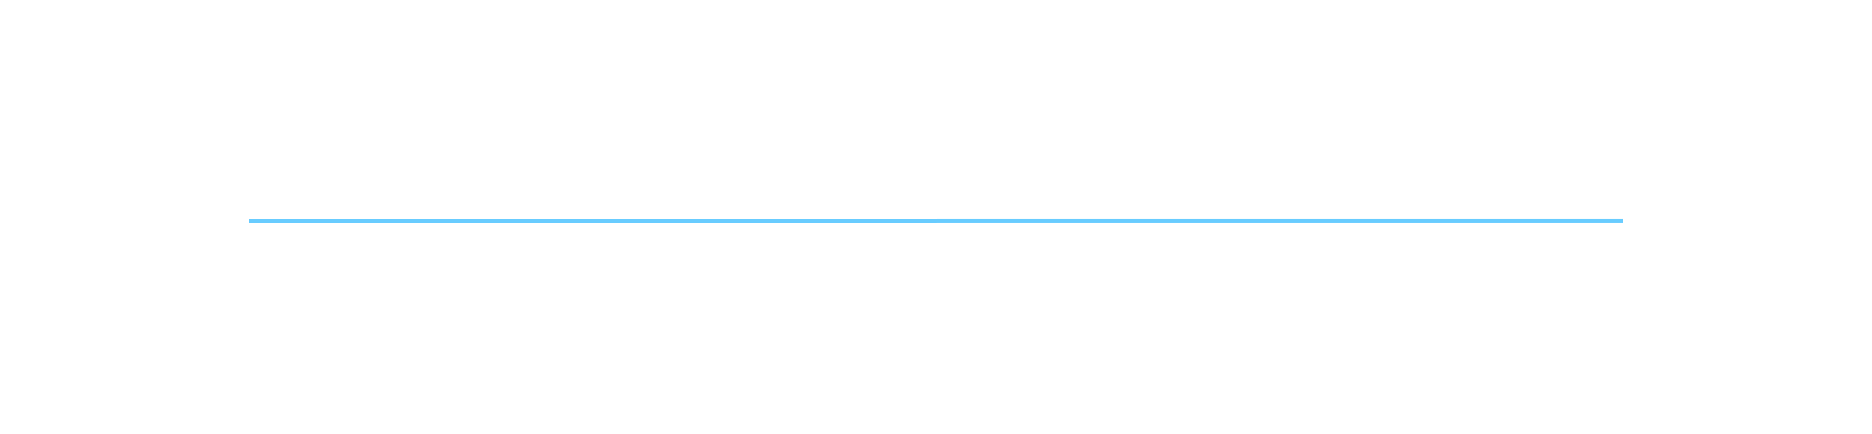 Leadership Board